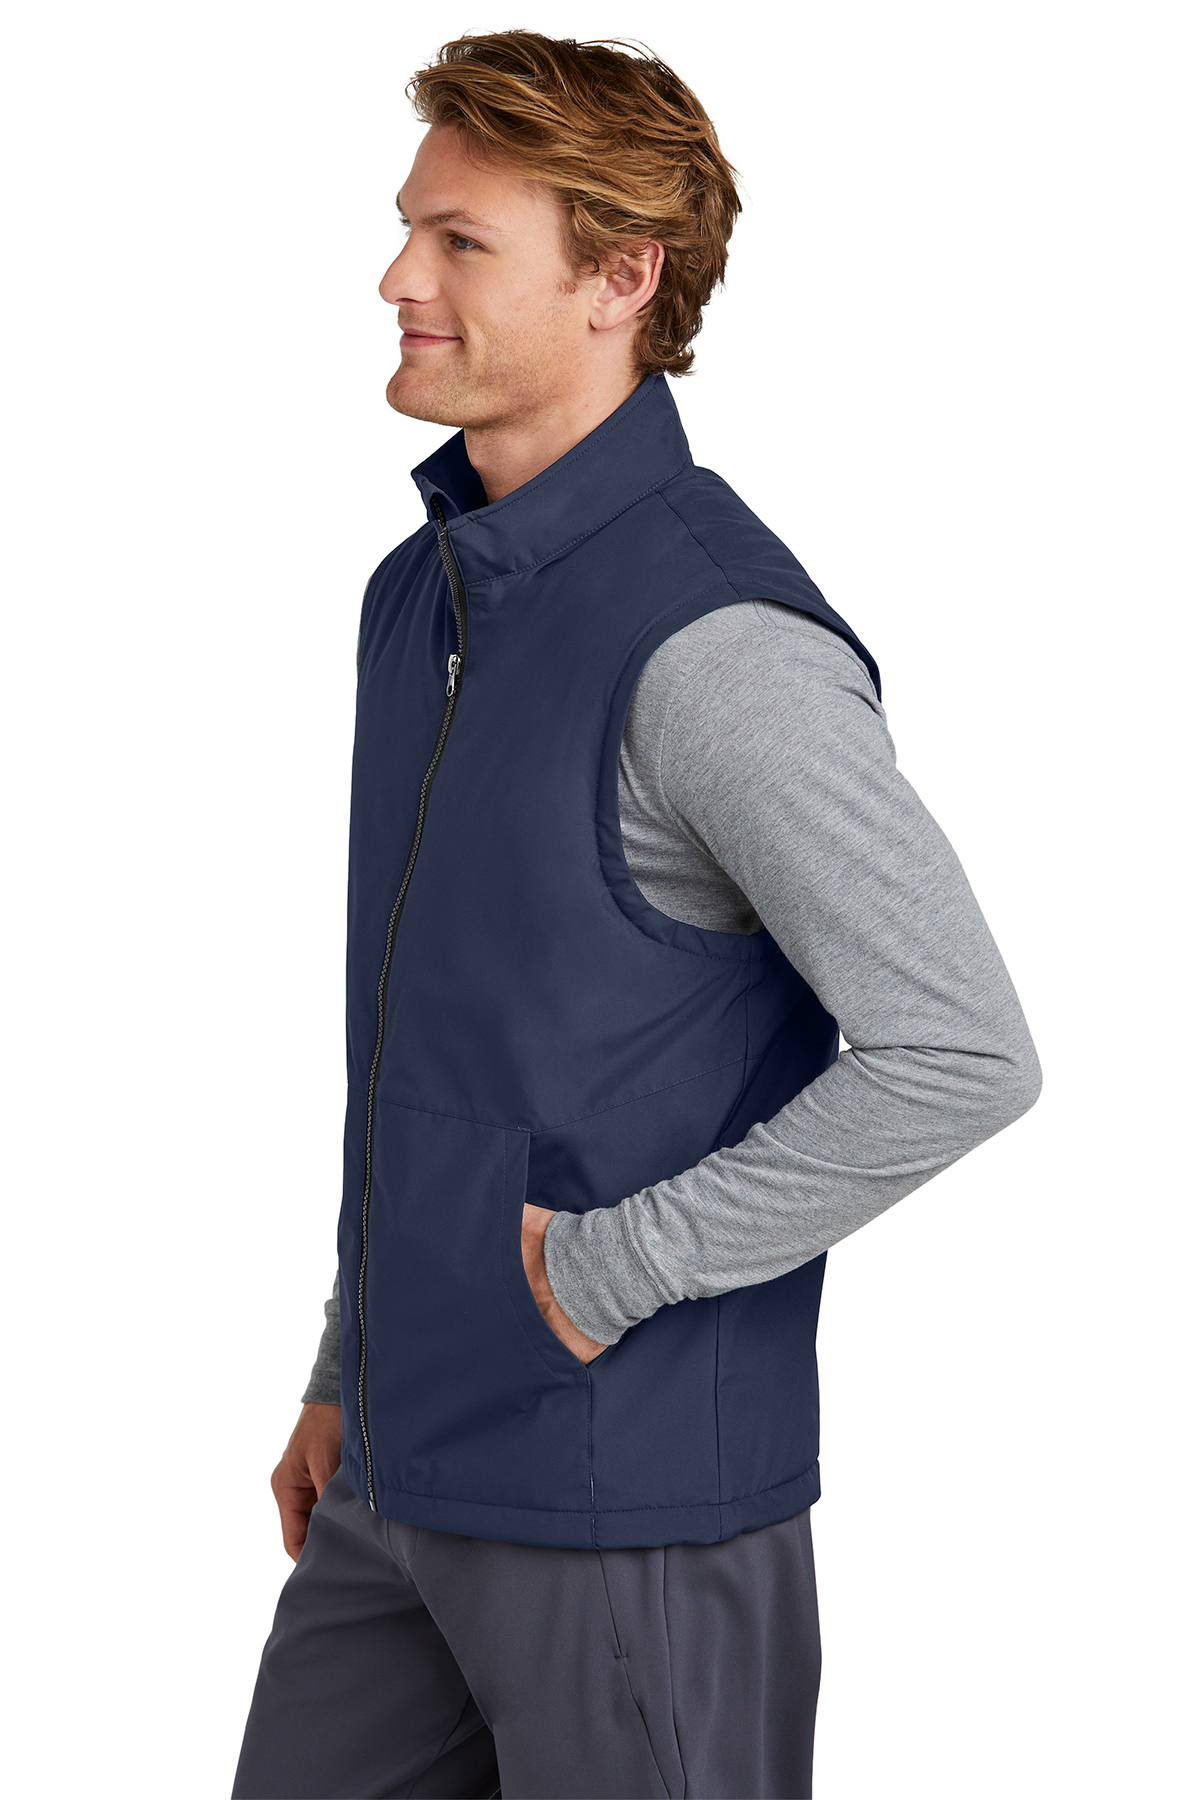 Sport-Tek Insulated Vest | Product | Sport-Tek